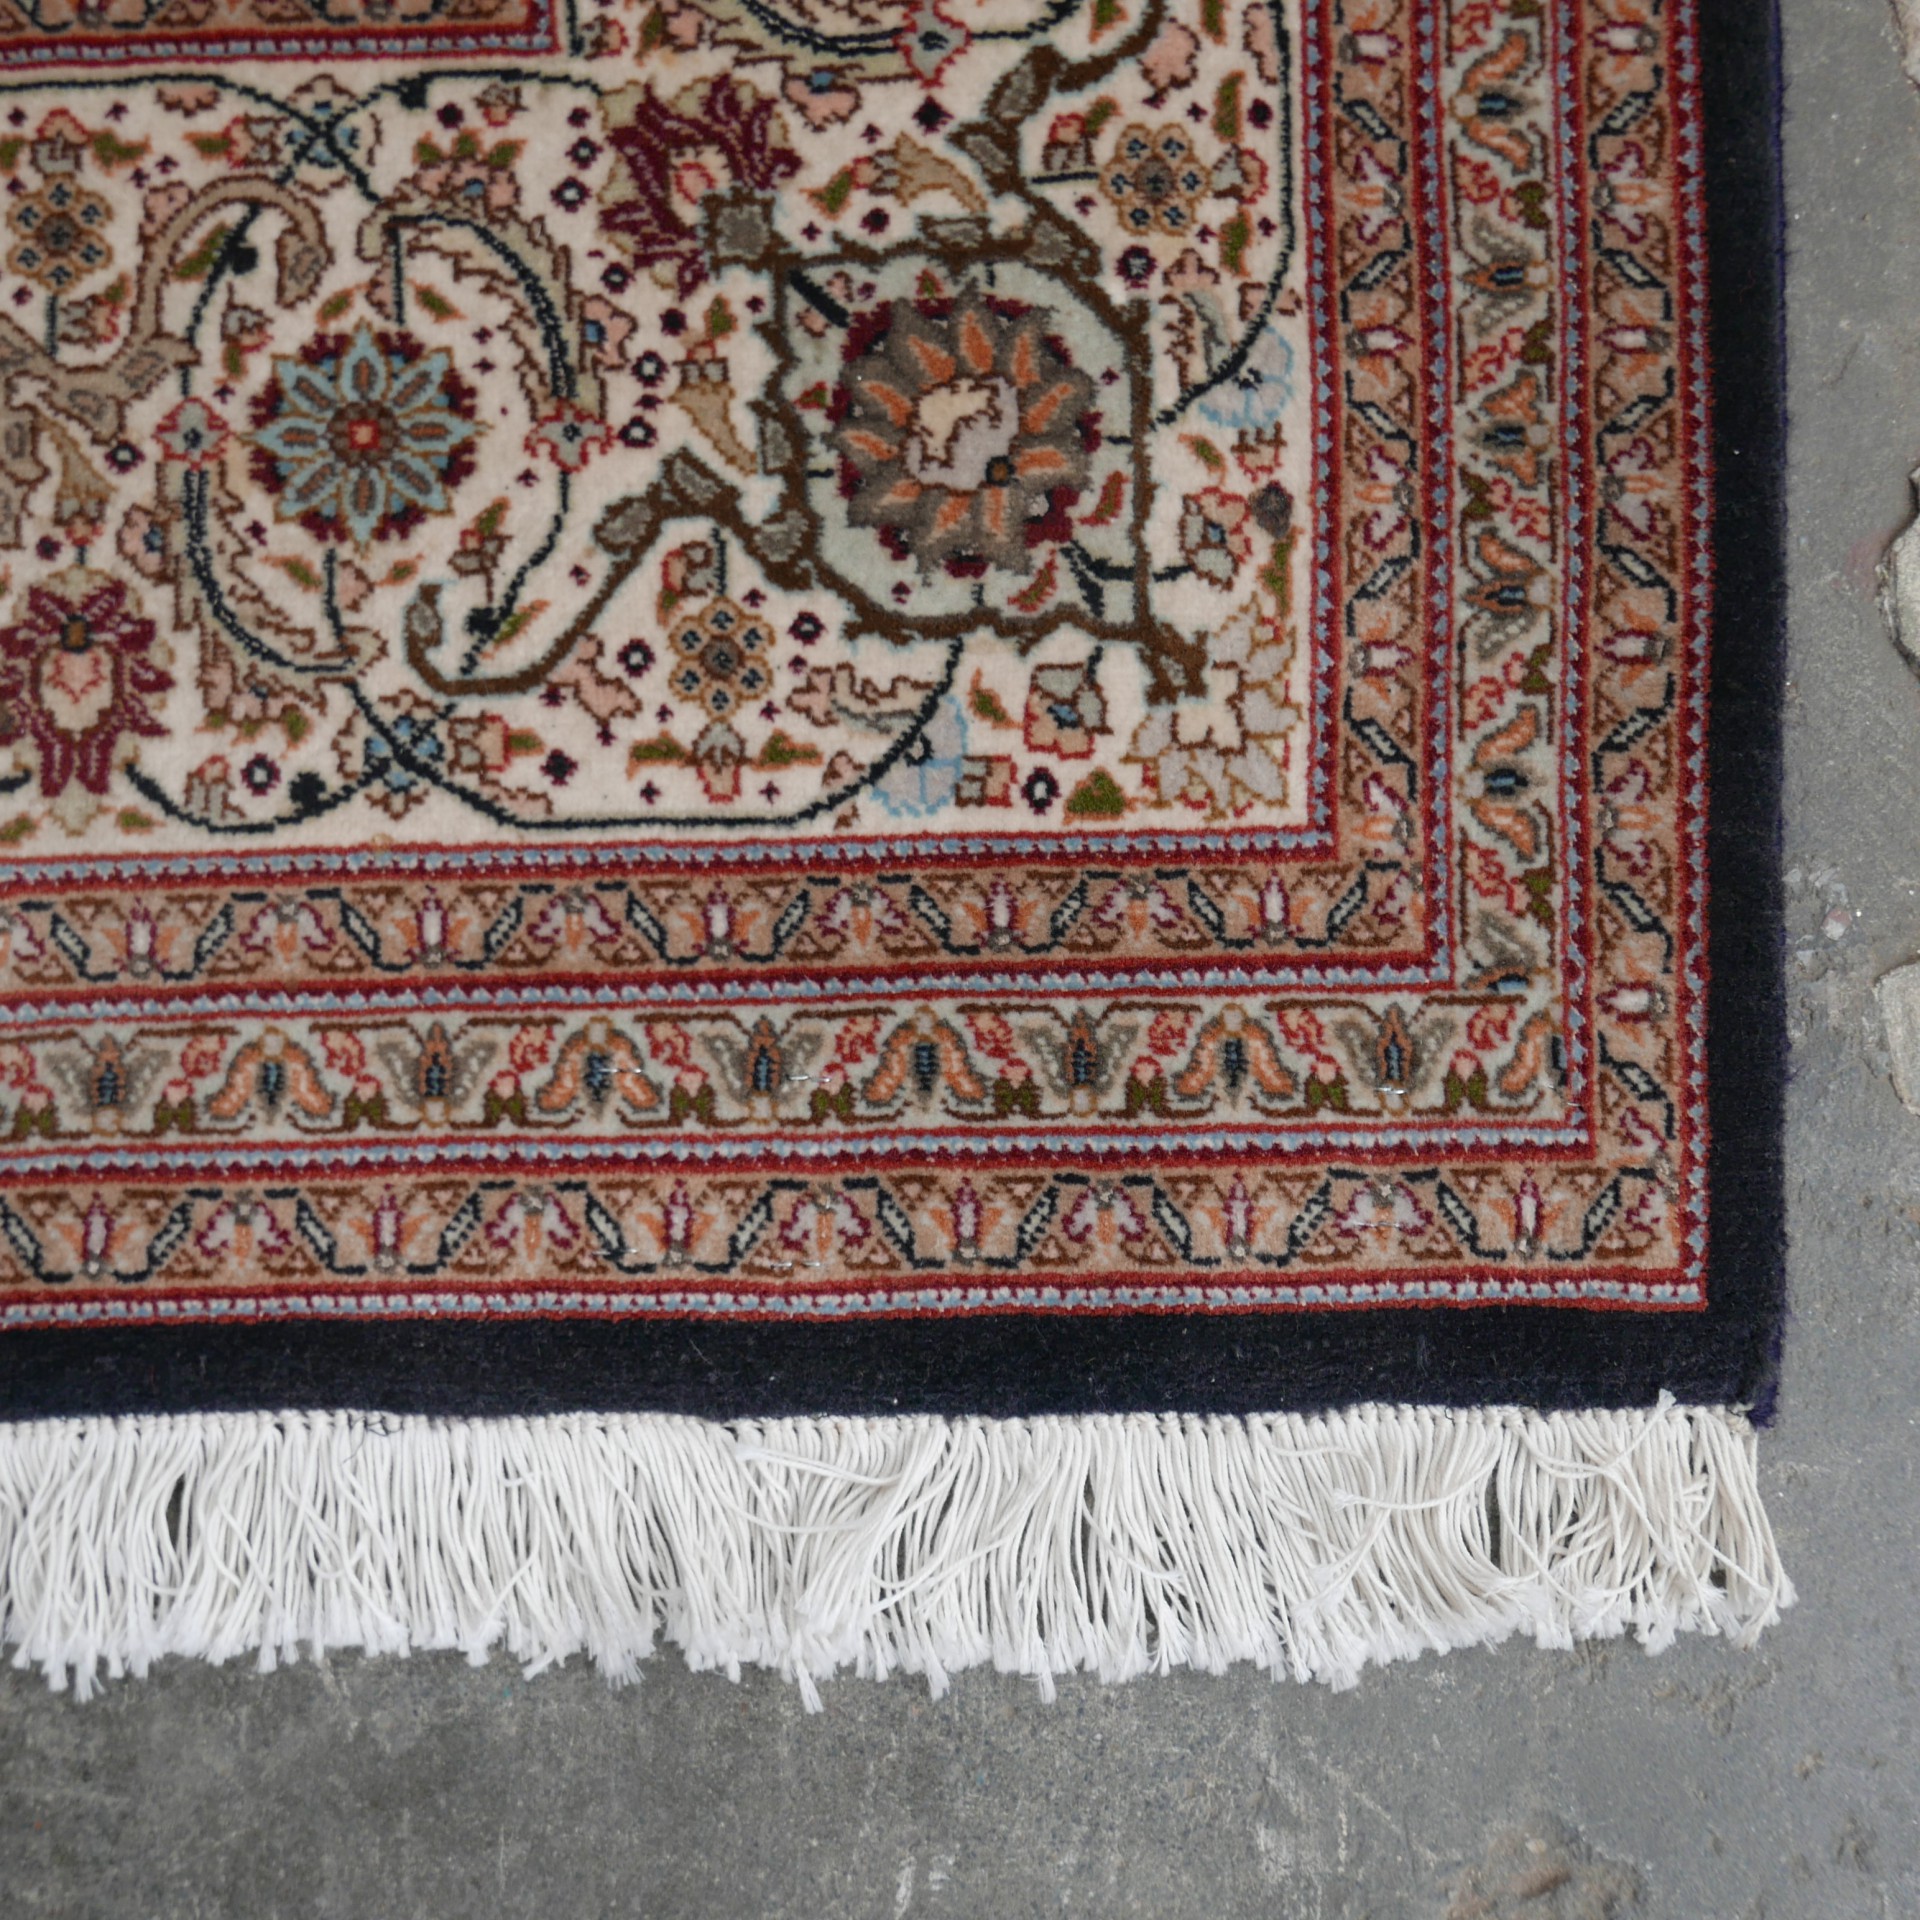 Allergie Ministerie zakdoek Perzisch tapijt roze » Van Dijk & Ko